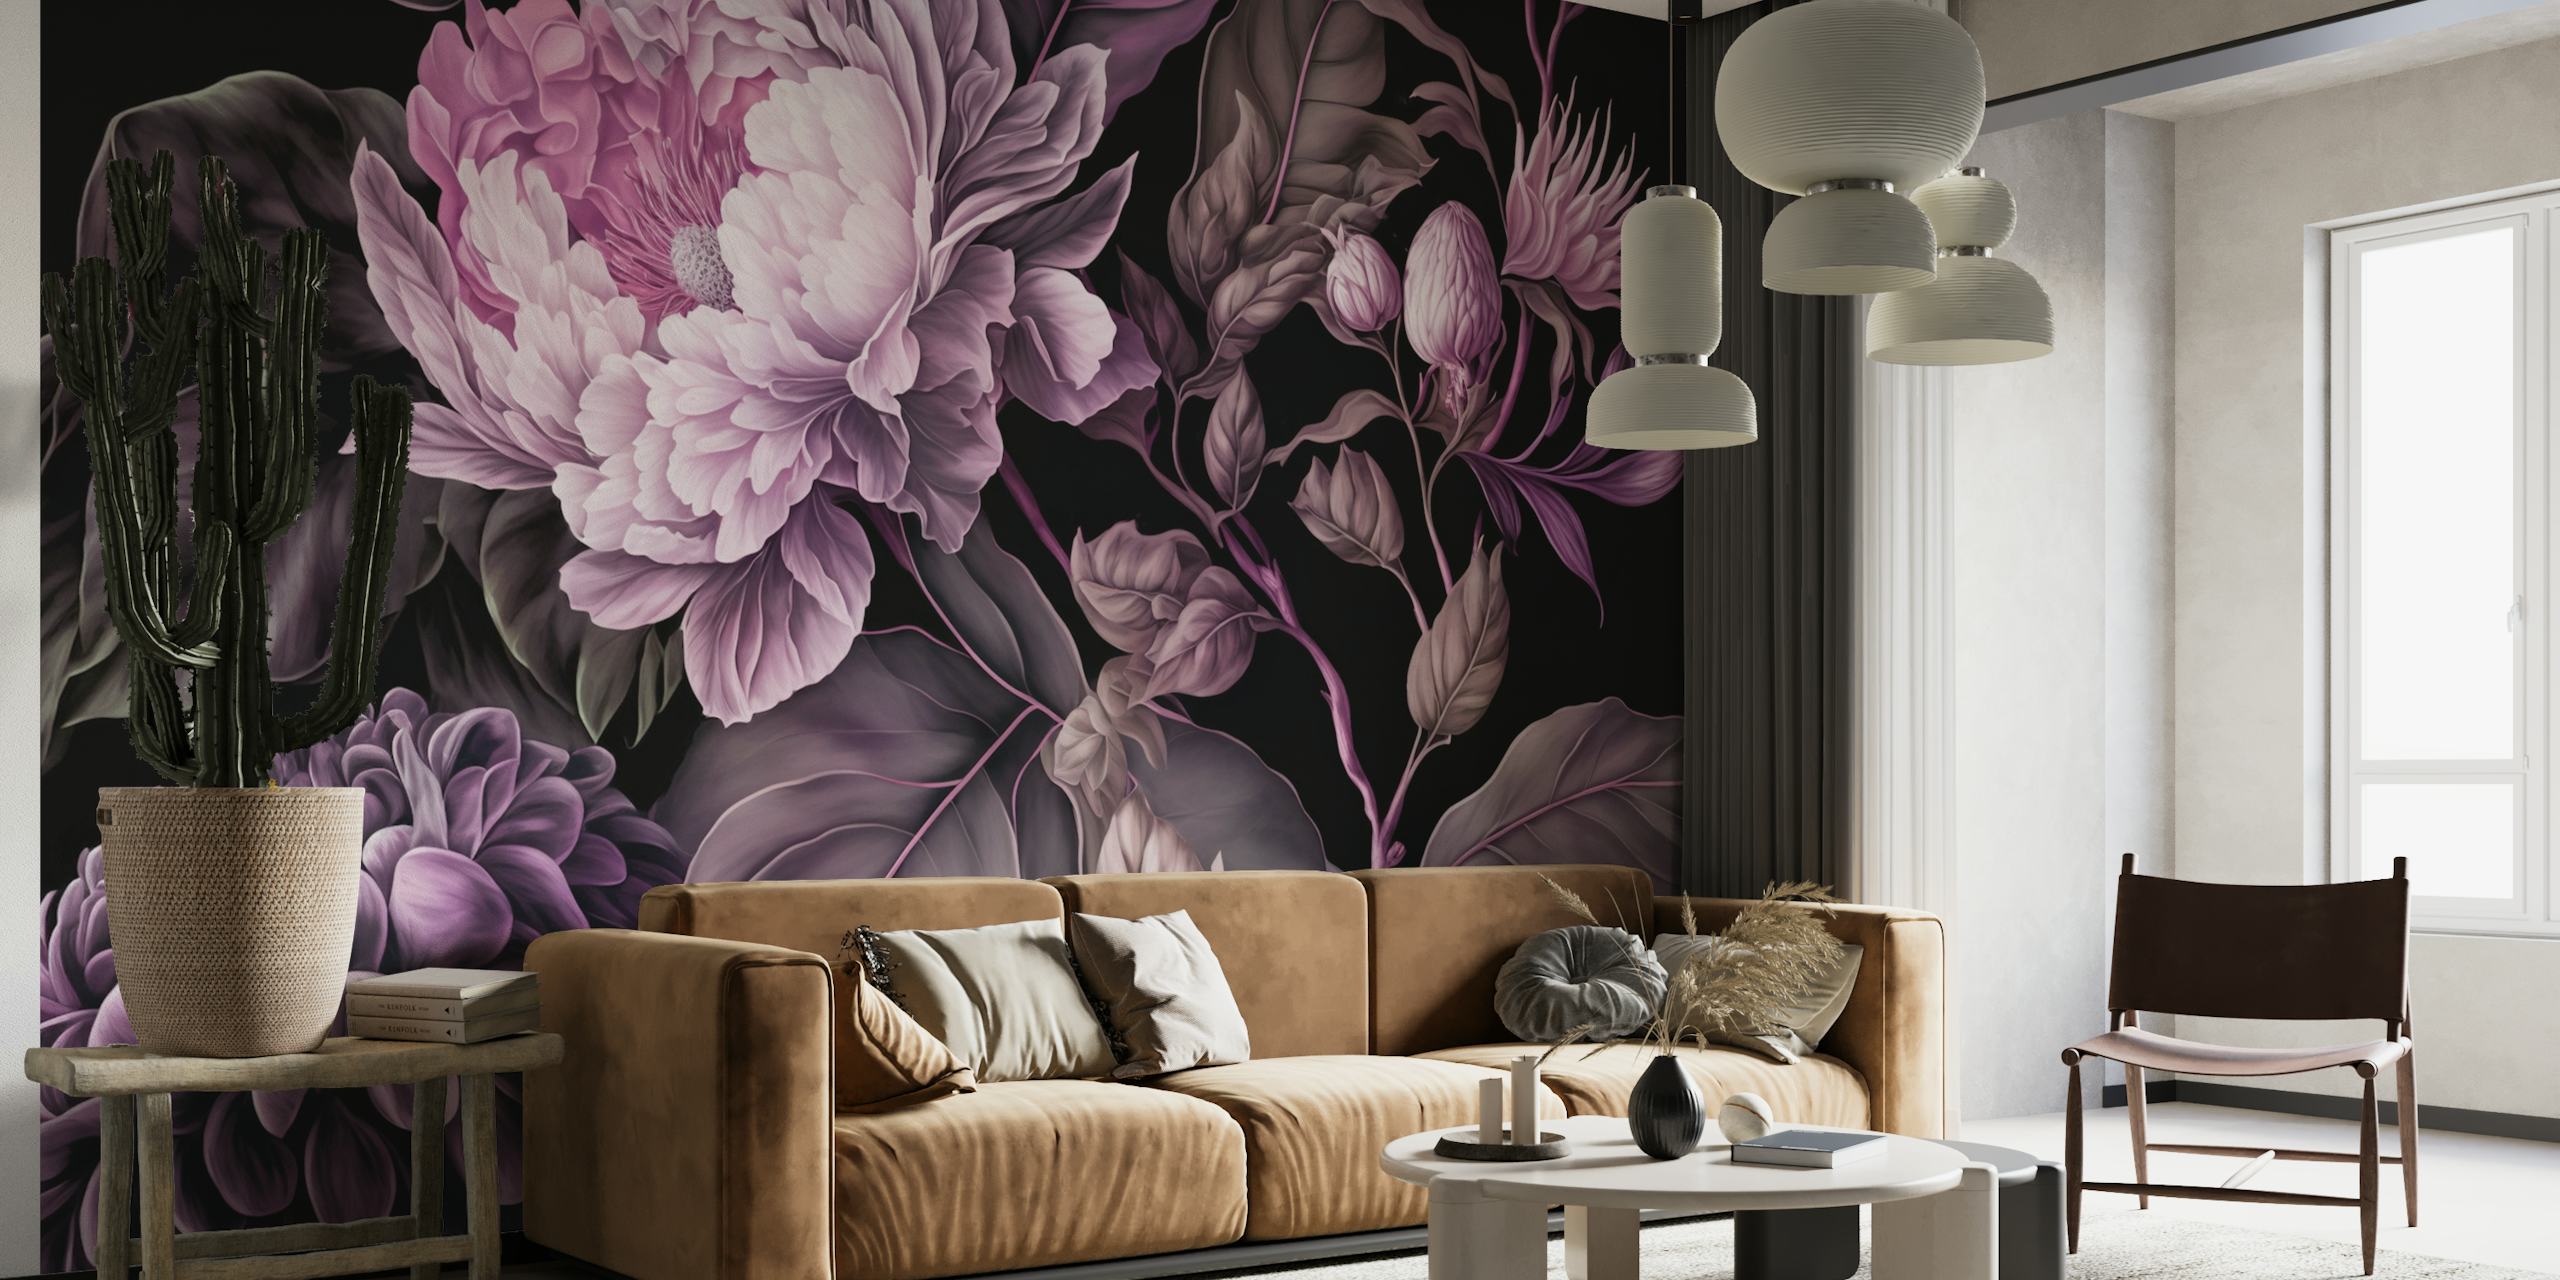 Fotomural vinílico de parede opulento e temperamental barroco com grande padrão floral para uma decoração dramática de casa.